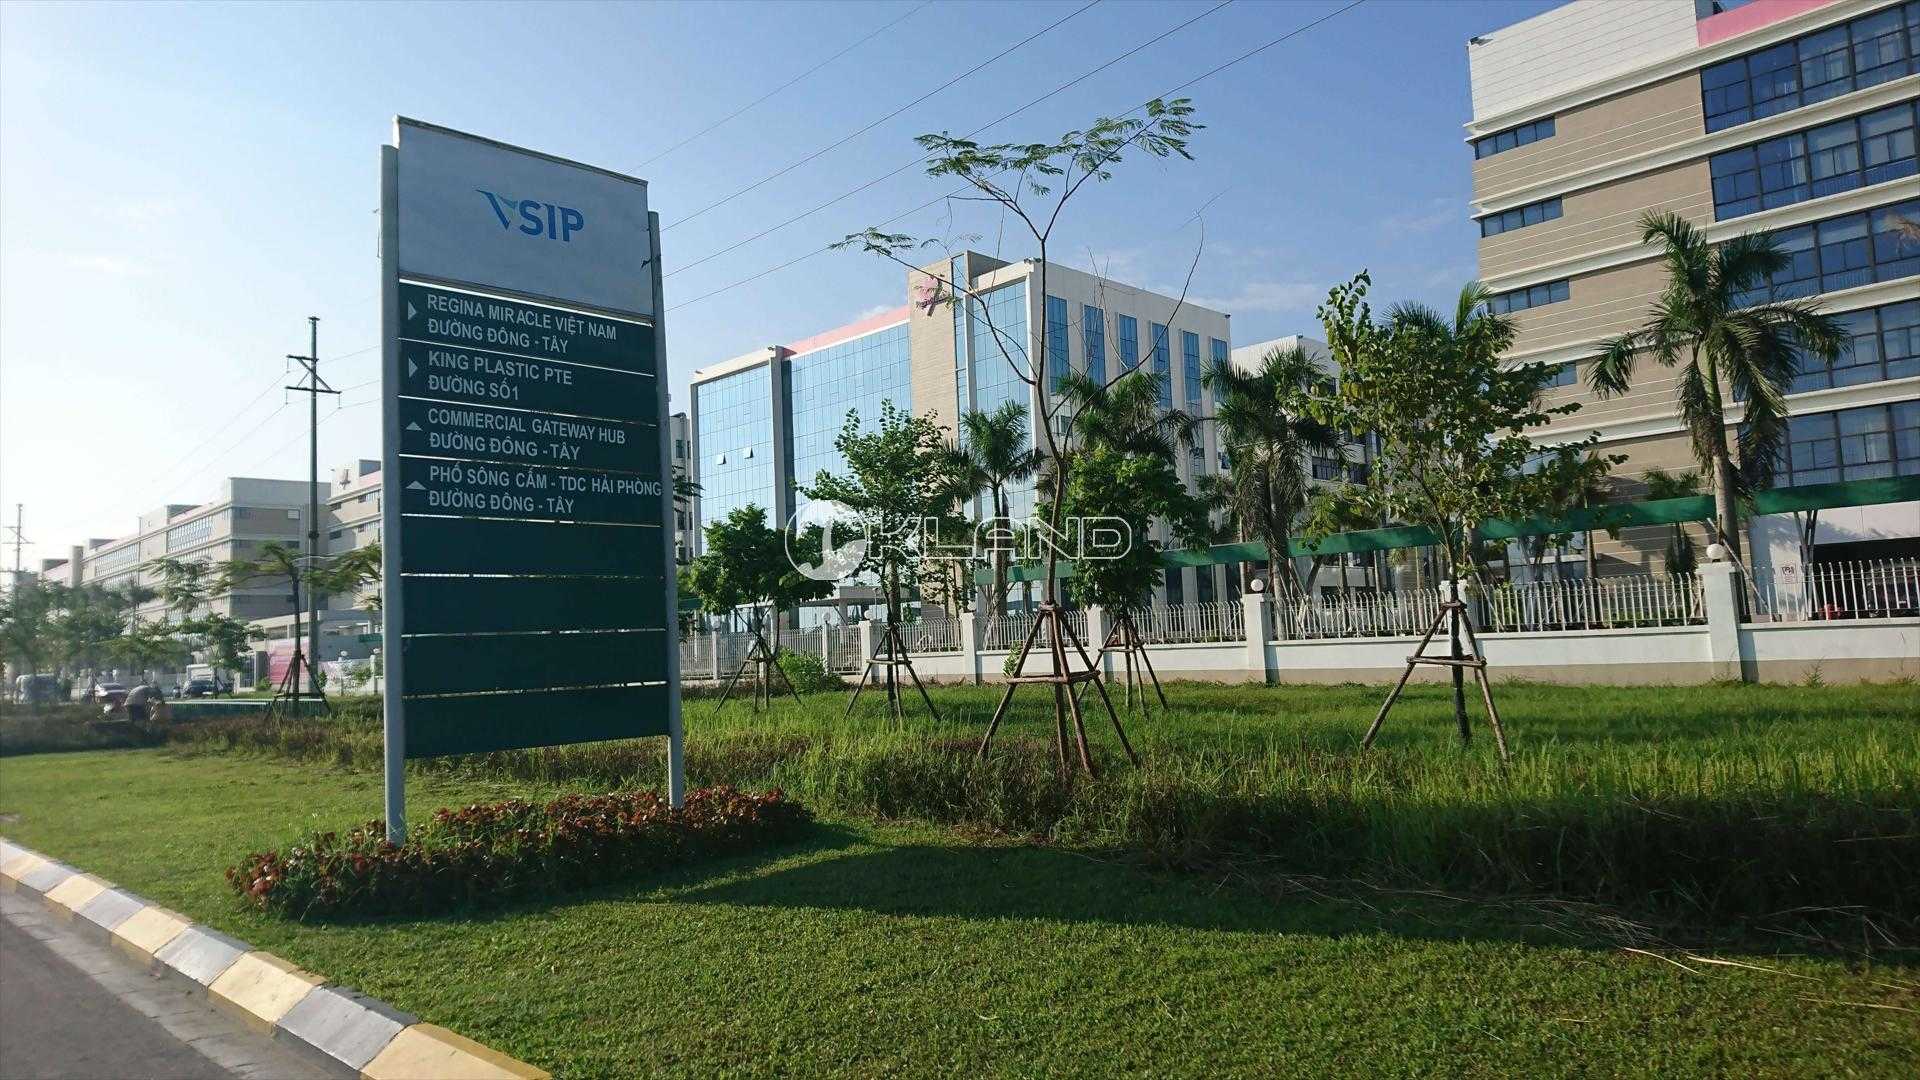 Khu công nghiệp VSIP - Hải Phòng